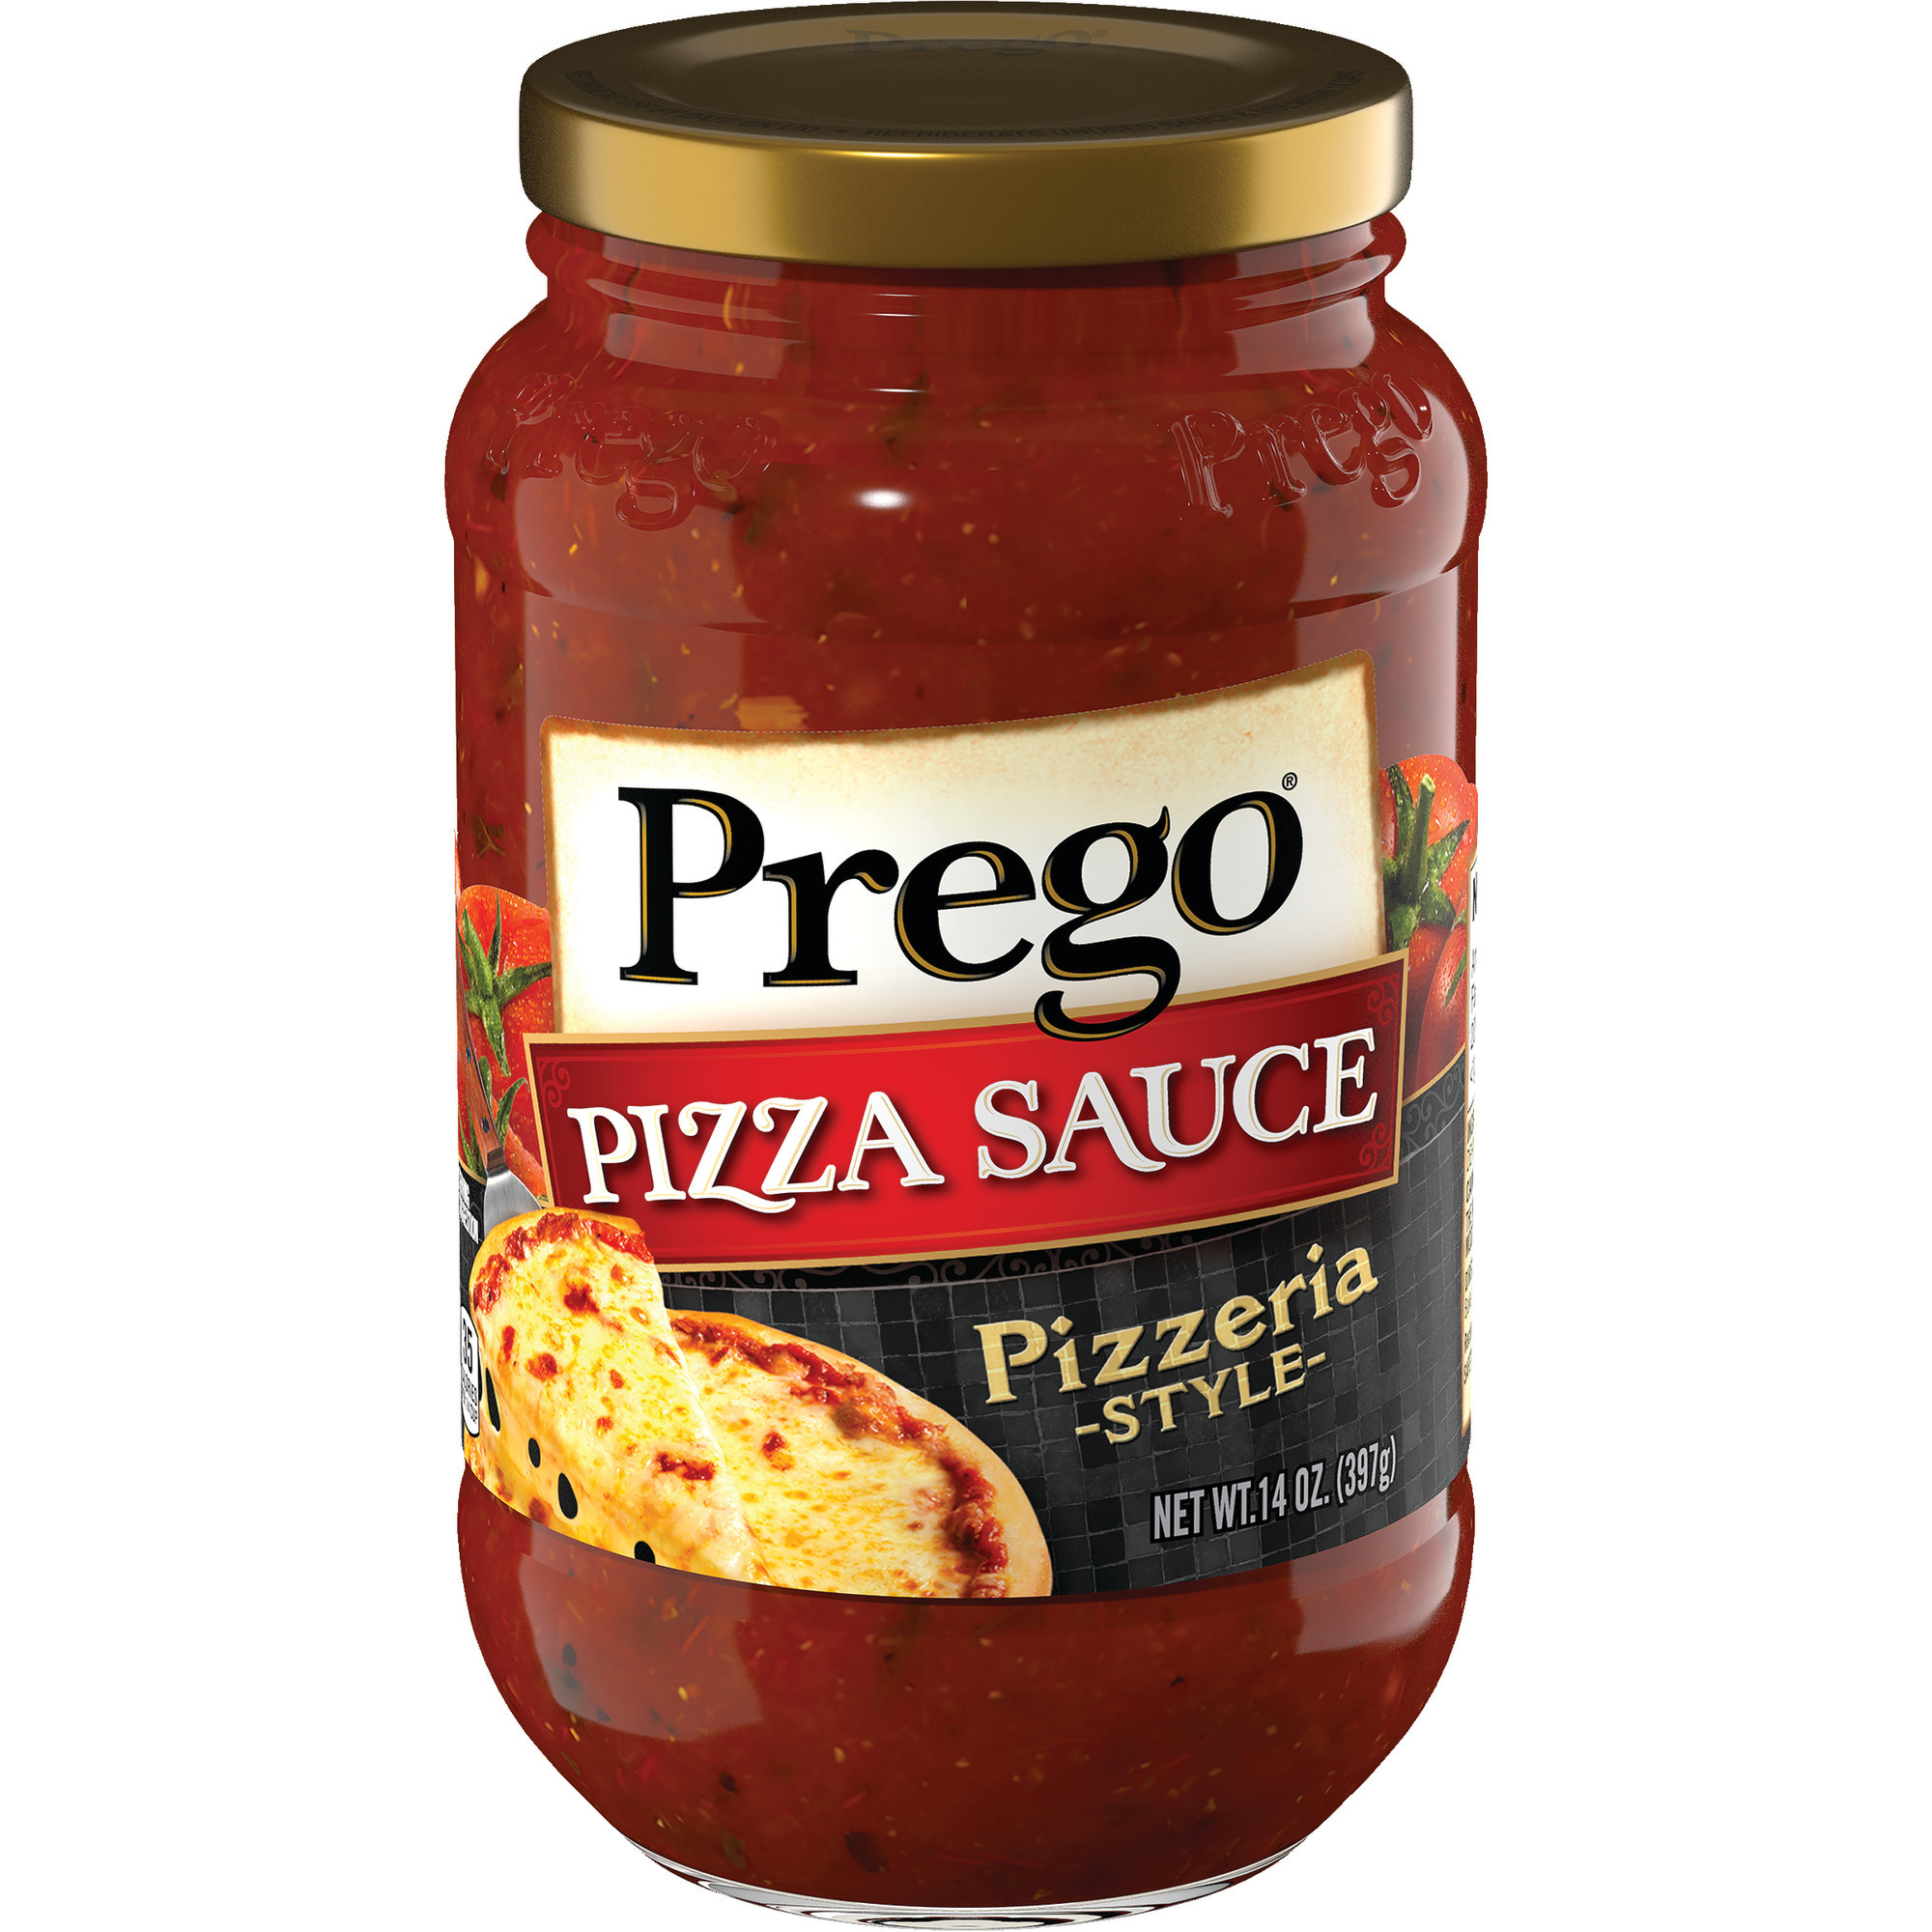 Prego Pizza Sauce Beautiful Prego Pizza Sauce Pizzeria Style 14 Ounce Jar Walmart